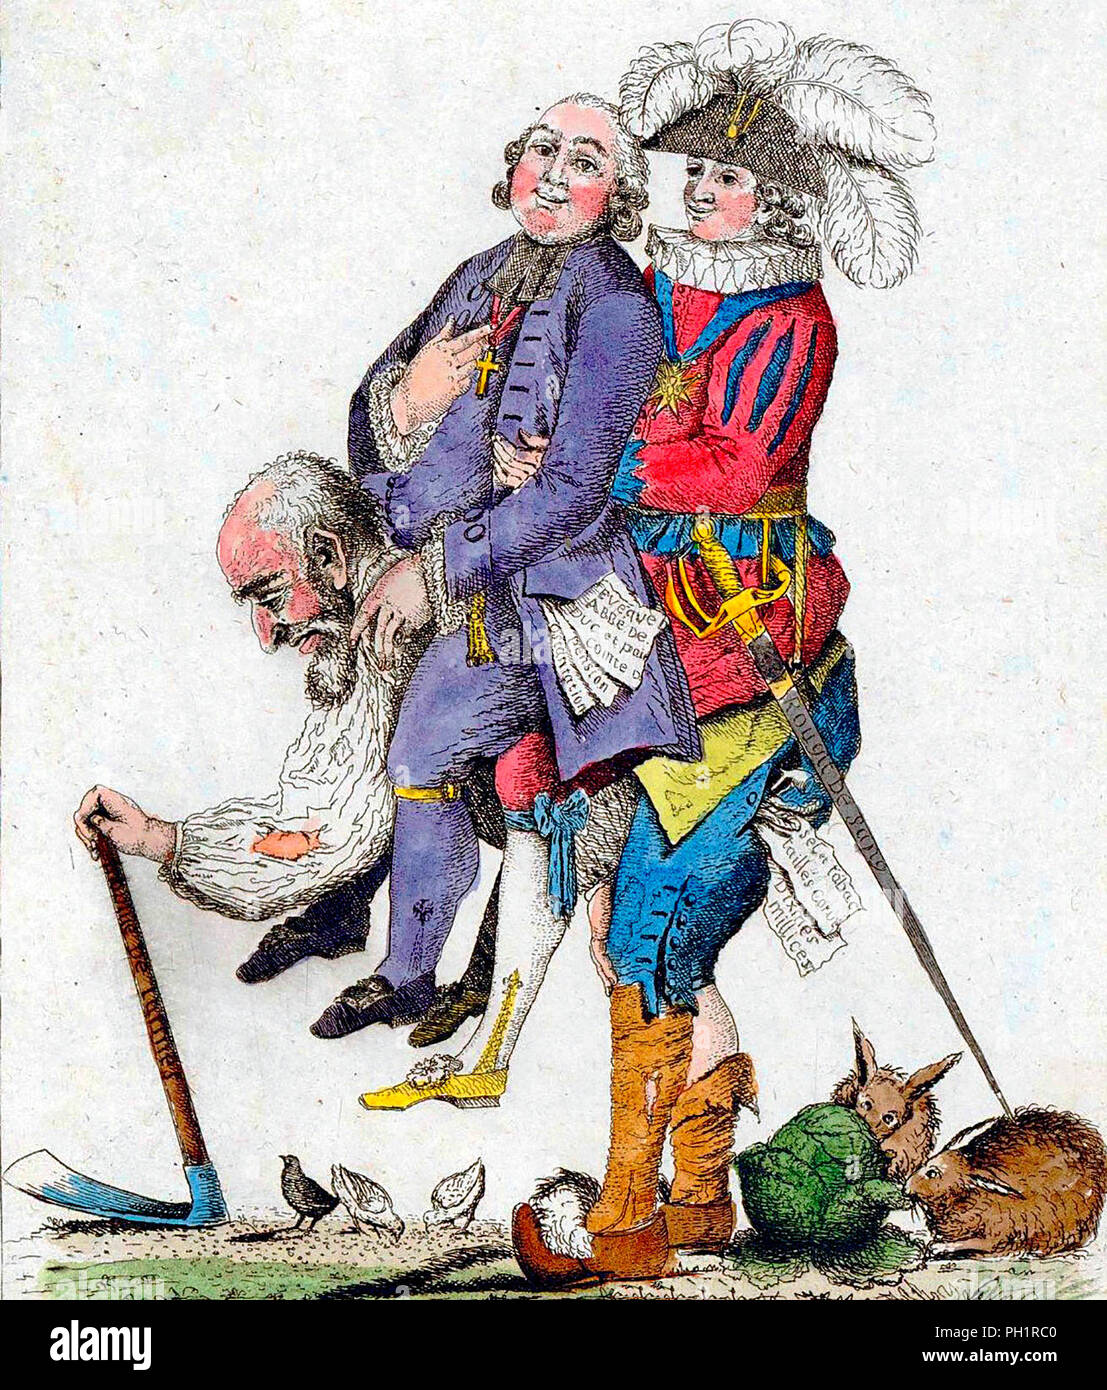 "Usted debe esperar que este juego será más pronto." El tercer Break llevando el clero y la nobleza en su espalda. Francia, 1789 Foto de stock